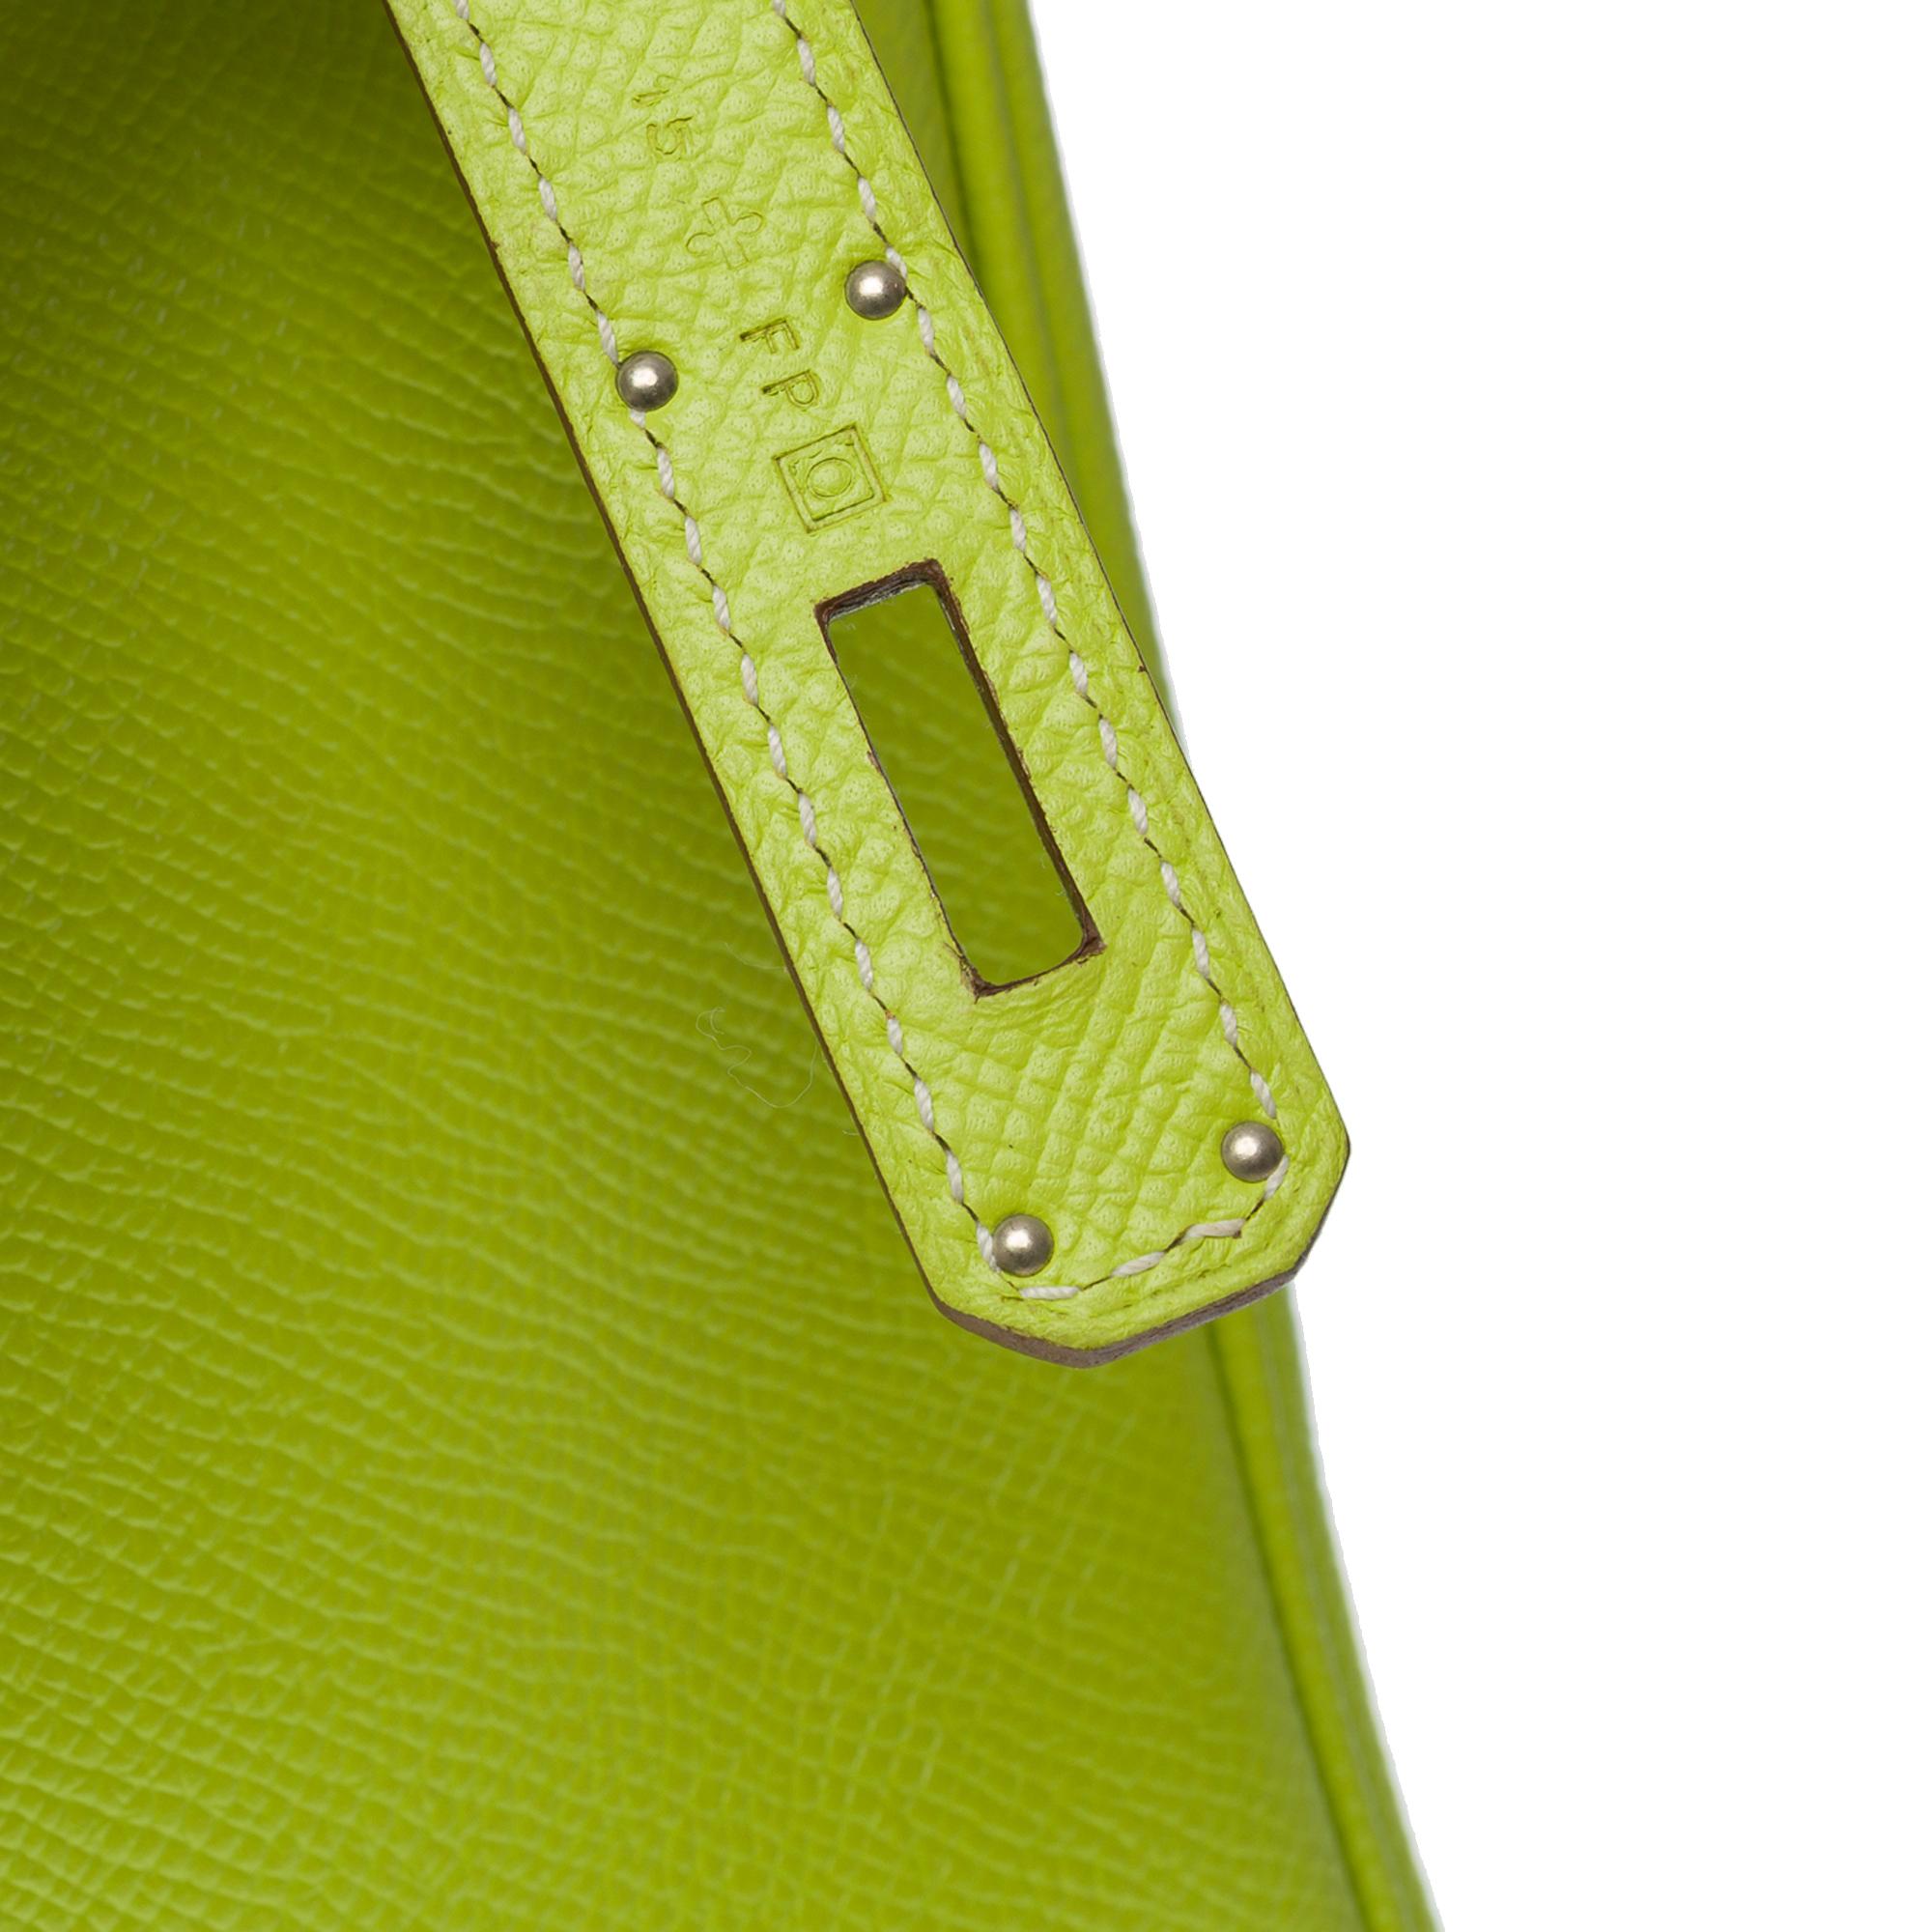 Candy limited edition Hermès Birkin 35 handbag in Kiwi Green epsom leather, SHW 3